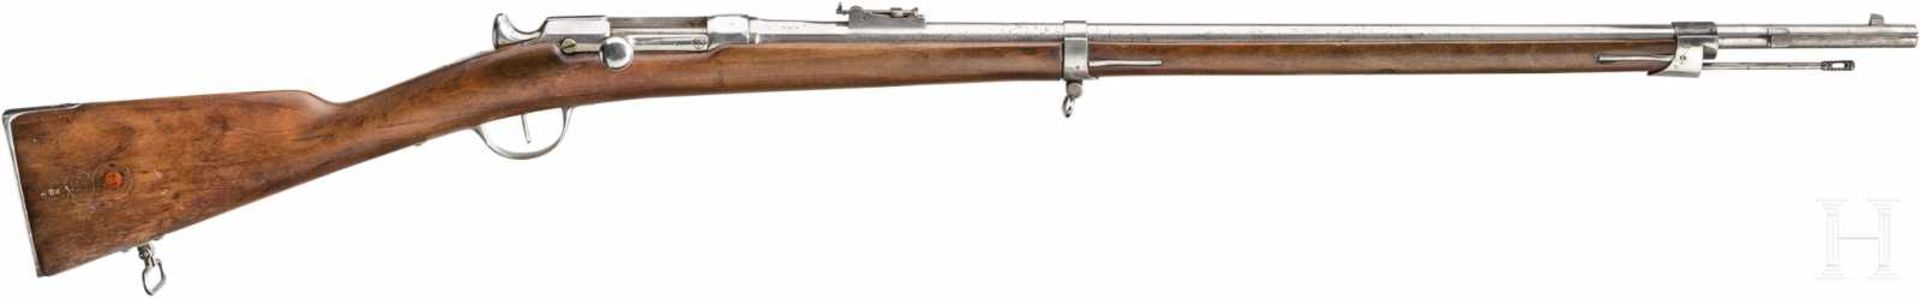 Zündnadelgewehr Chassepot M 1866Kal. 11 mm, Nr. E77738, nicht nummerngleich. Leicht matter, vierfach